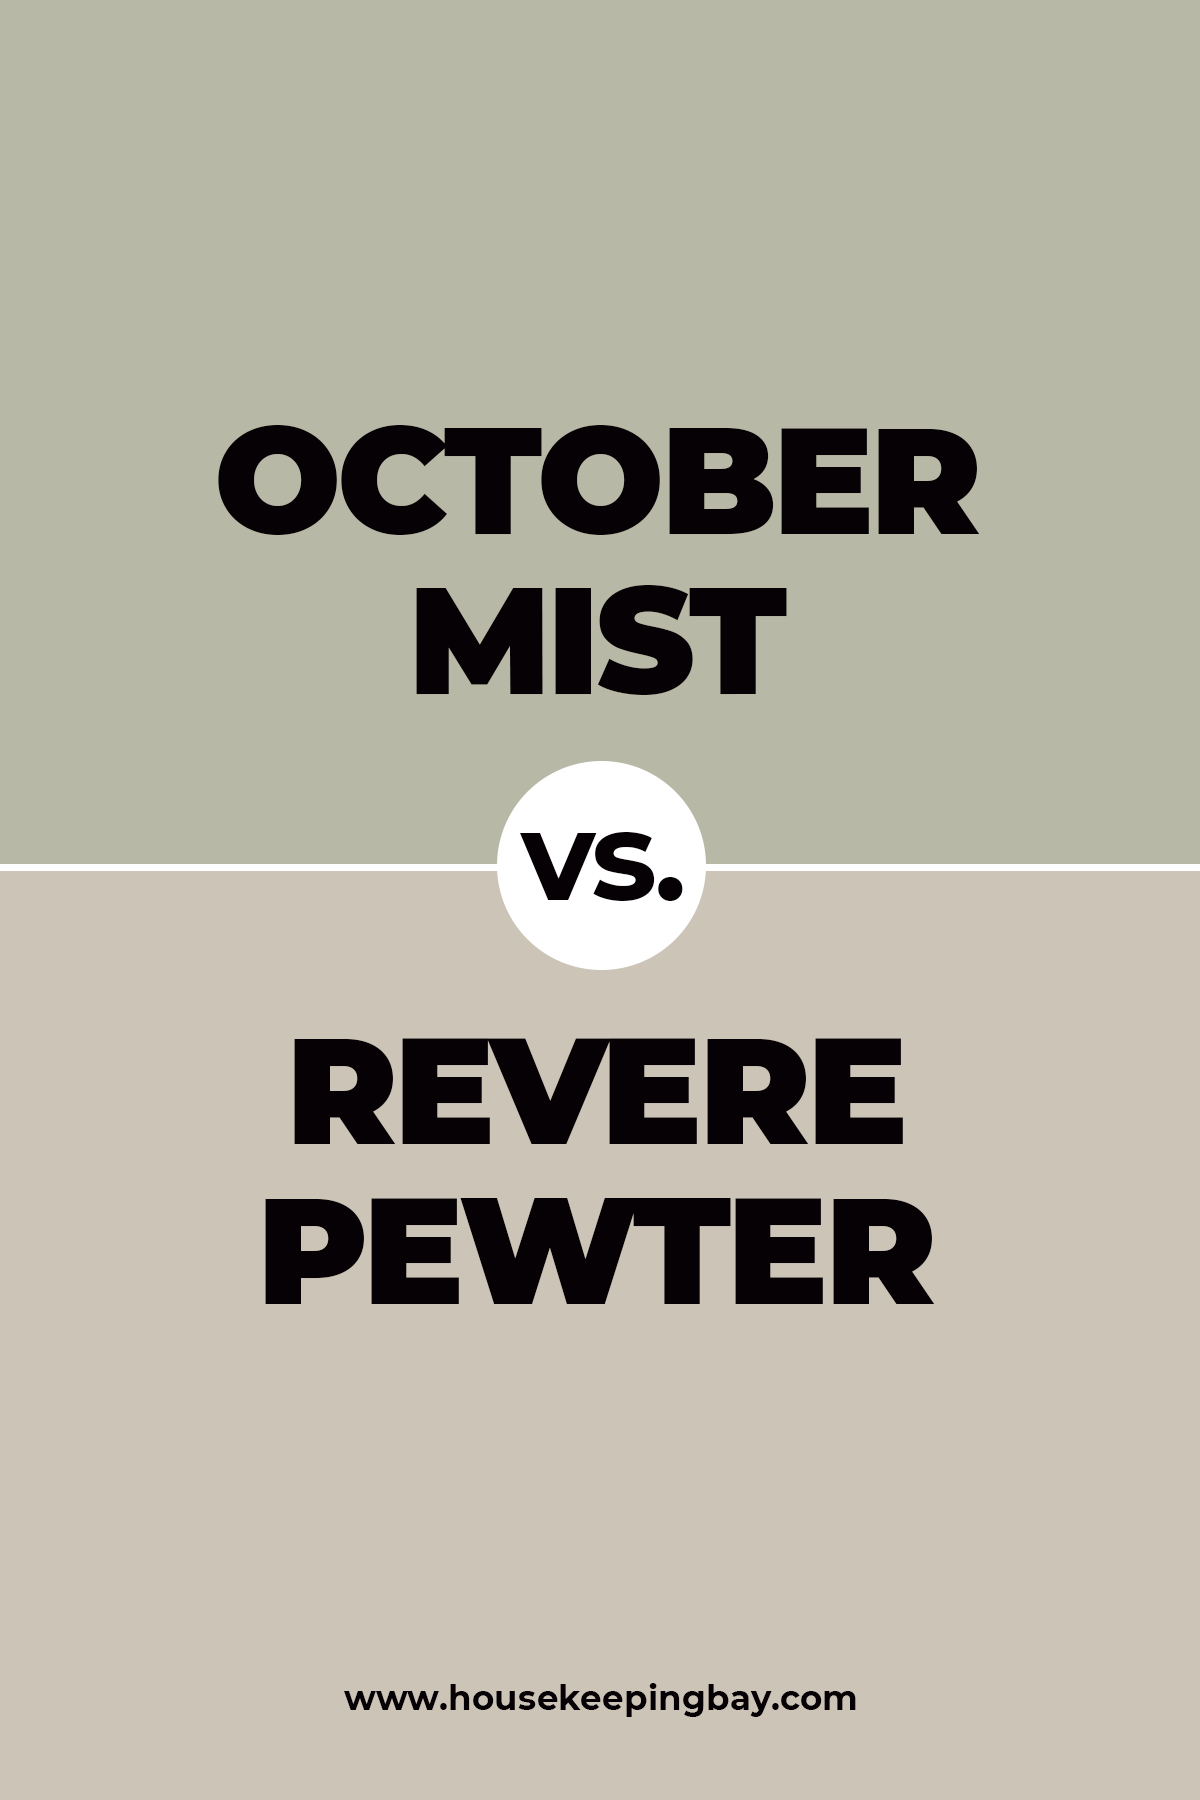 October Mist vs. revere pewter